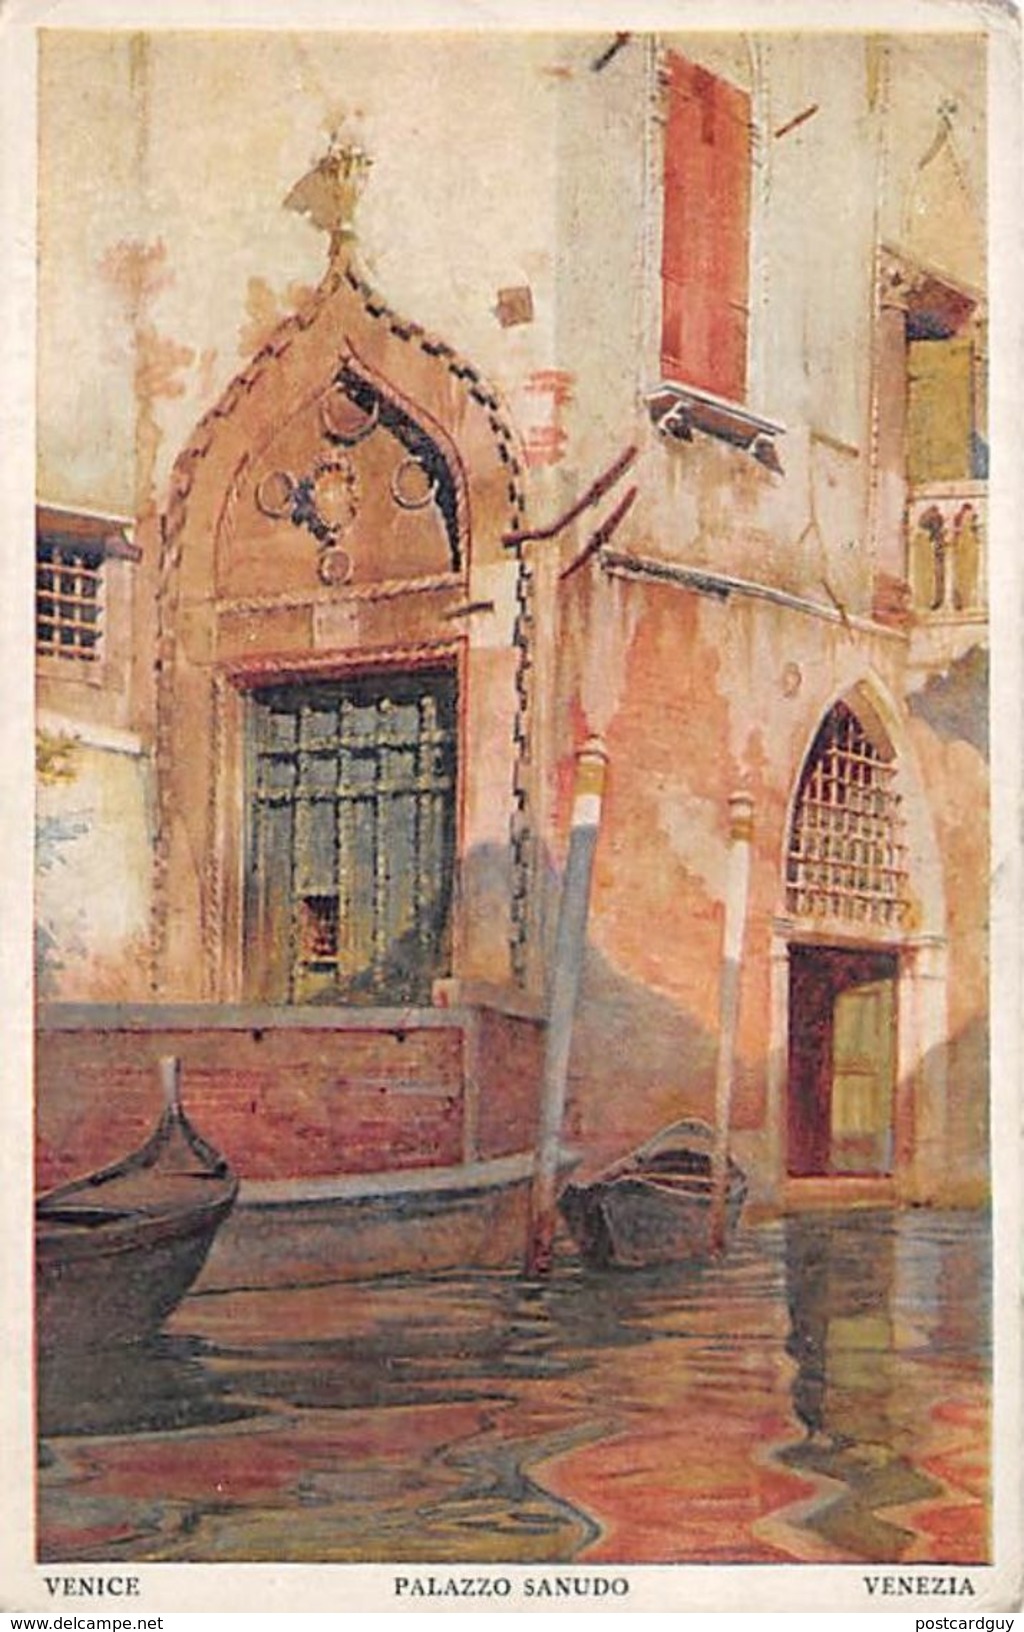 2 Postcards - Venezia - Palazzo Sanudo & Ingresso Al Canal Grande - LITHO MEDICI SOCIETY LONDON - Venetië (Venice)